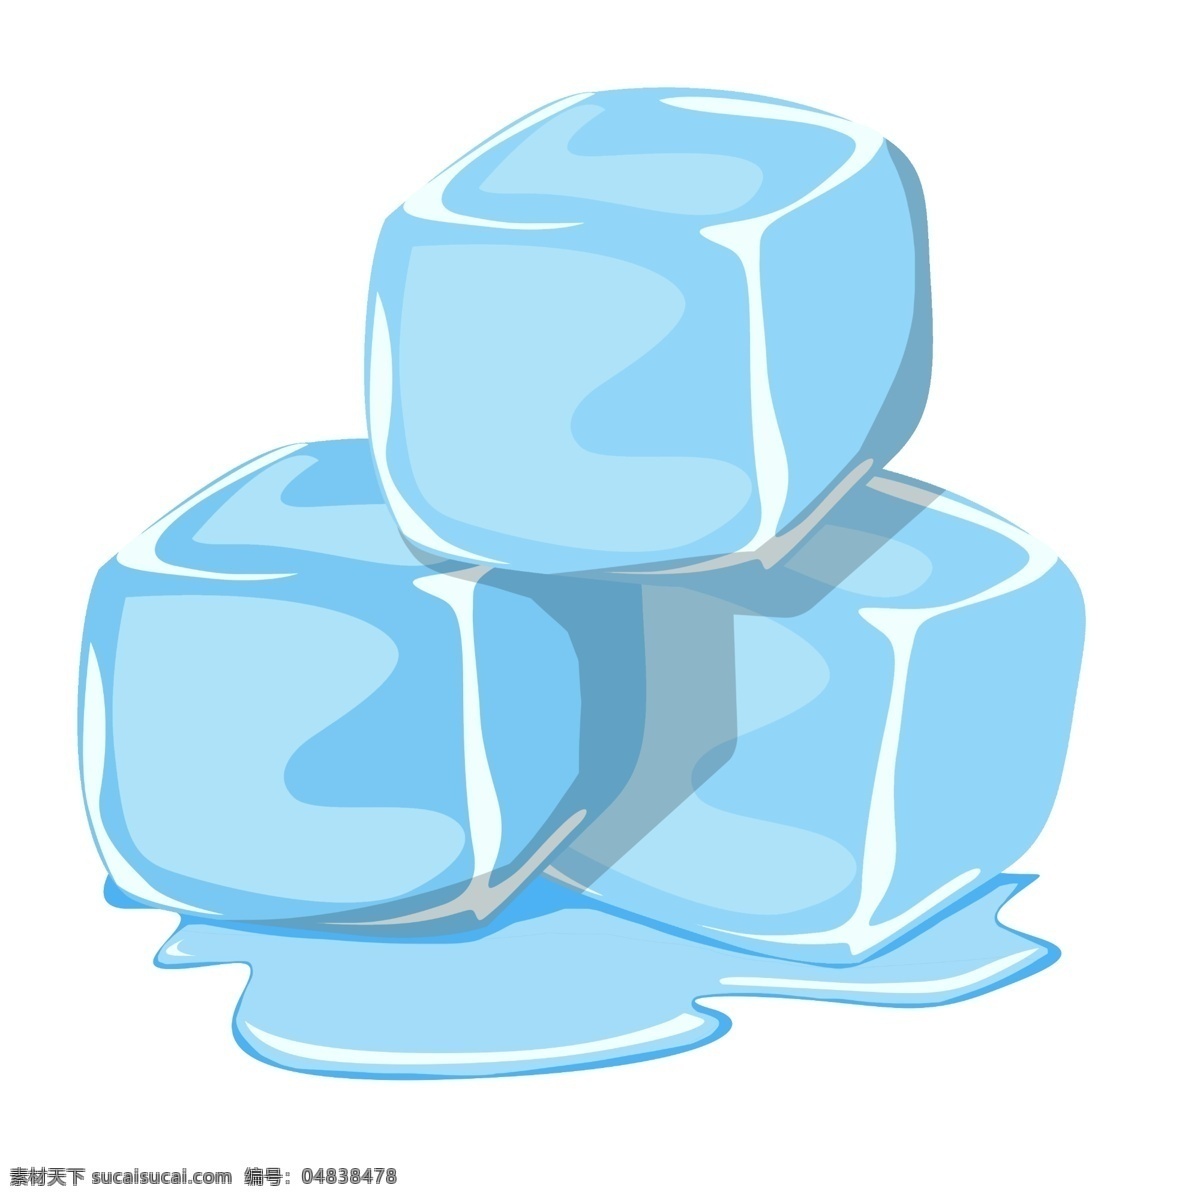 三块蓝色冰块 蓝色冰块 冰块 冰